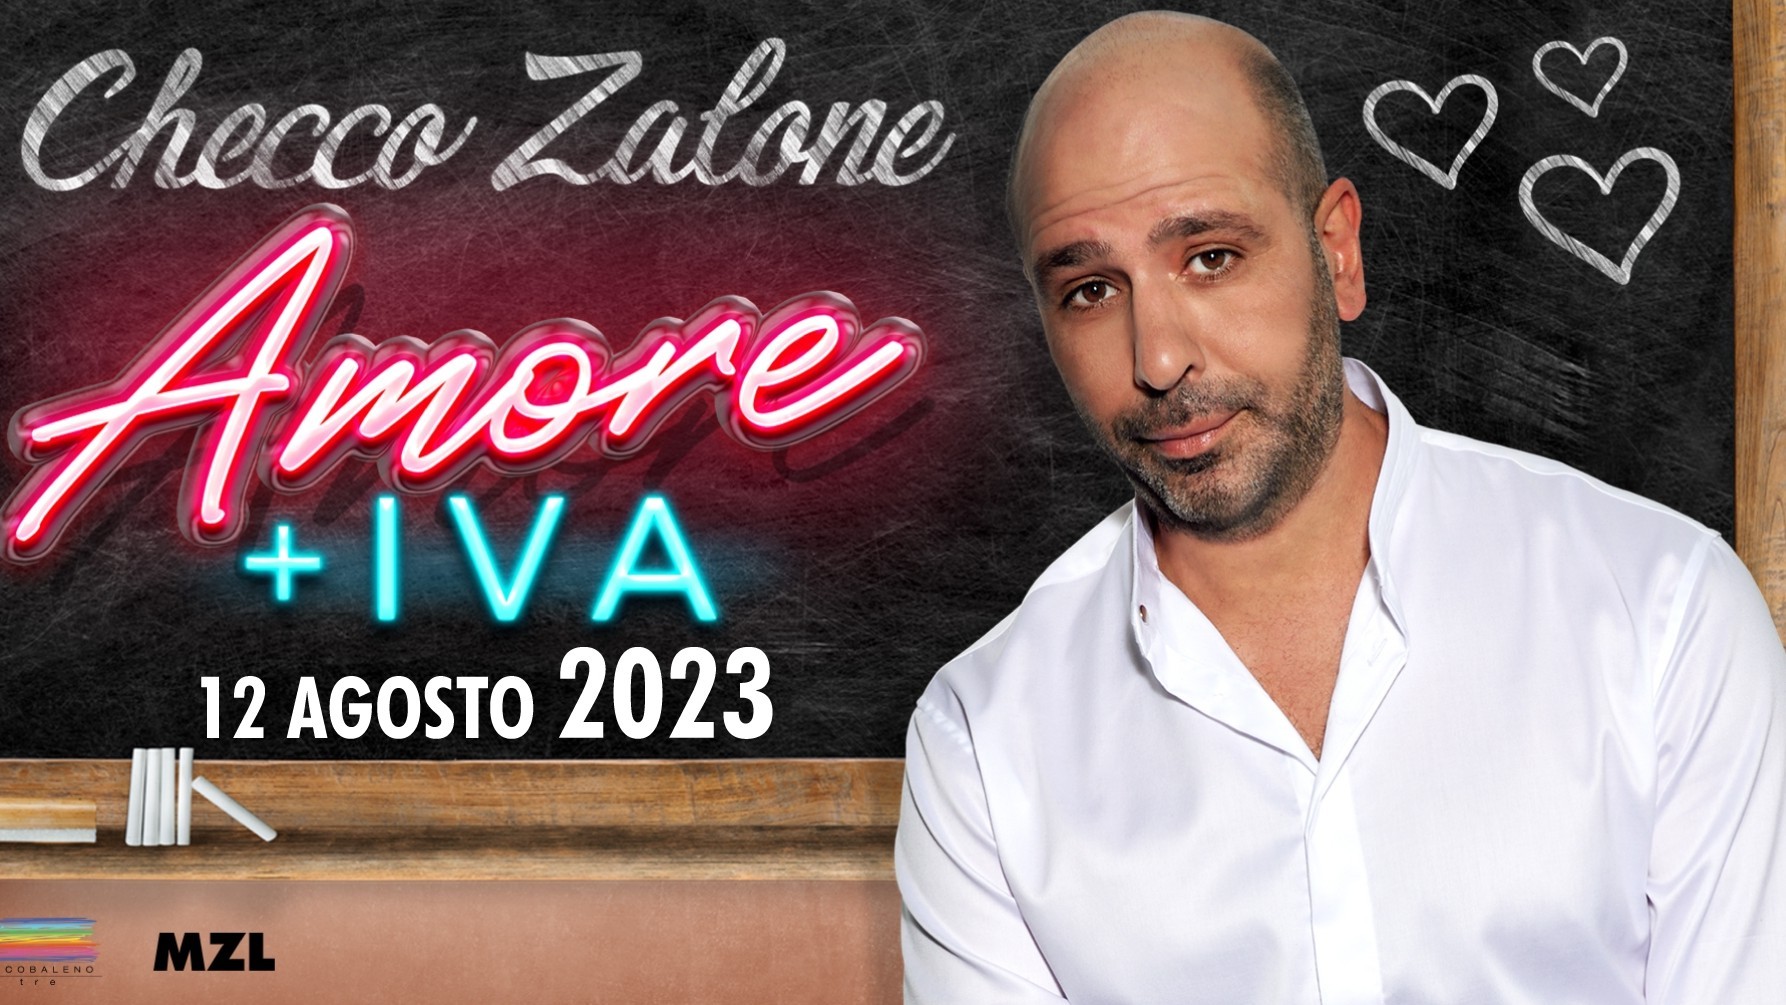 Checco Zalone "Amore + IVA"